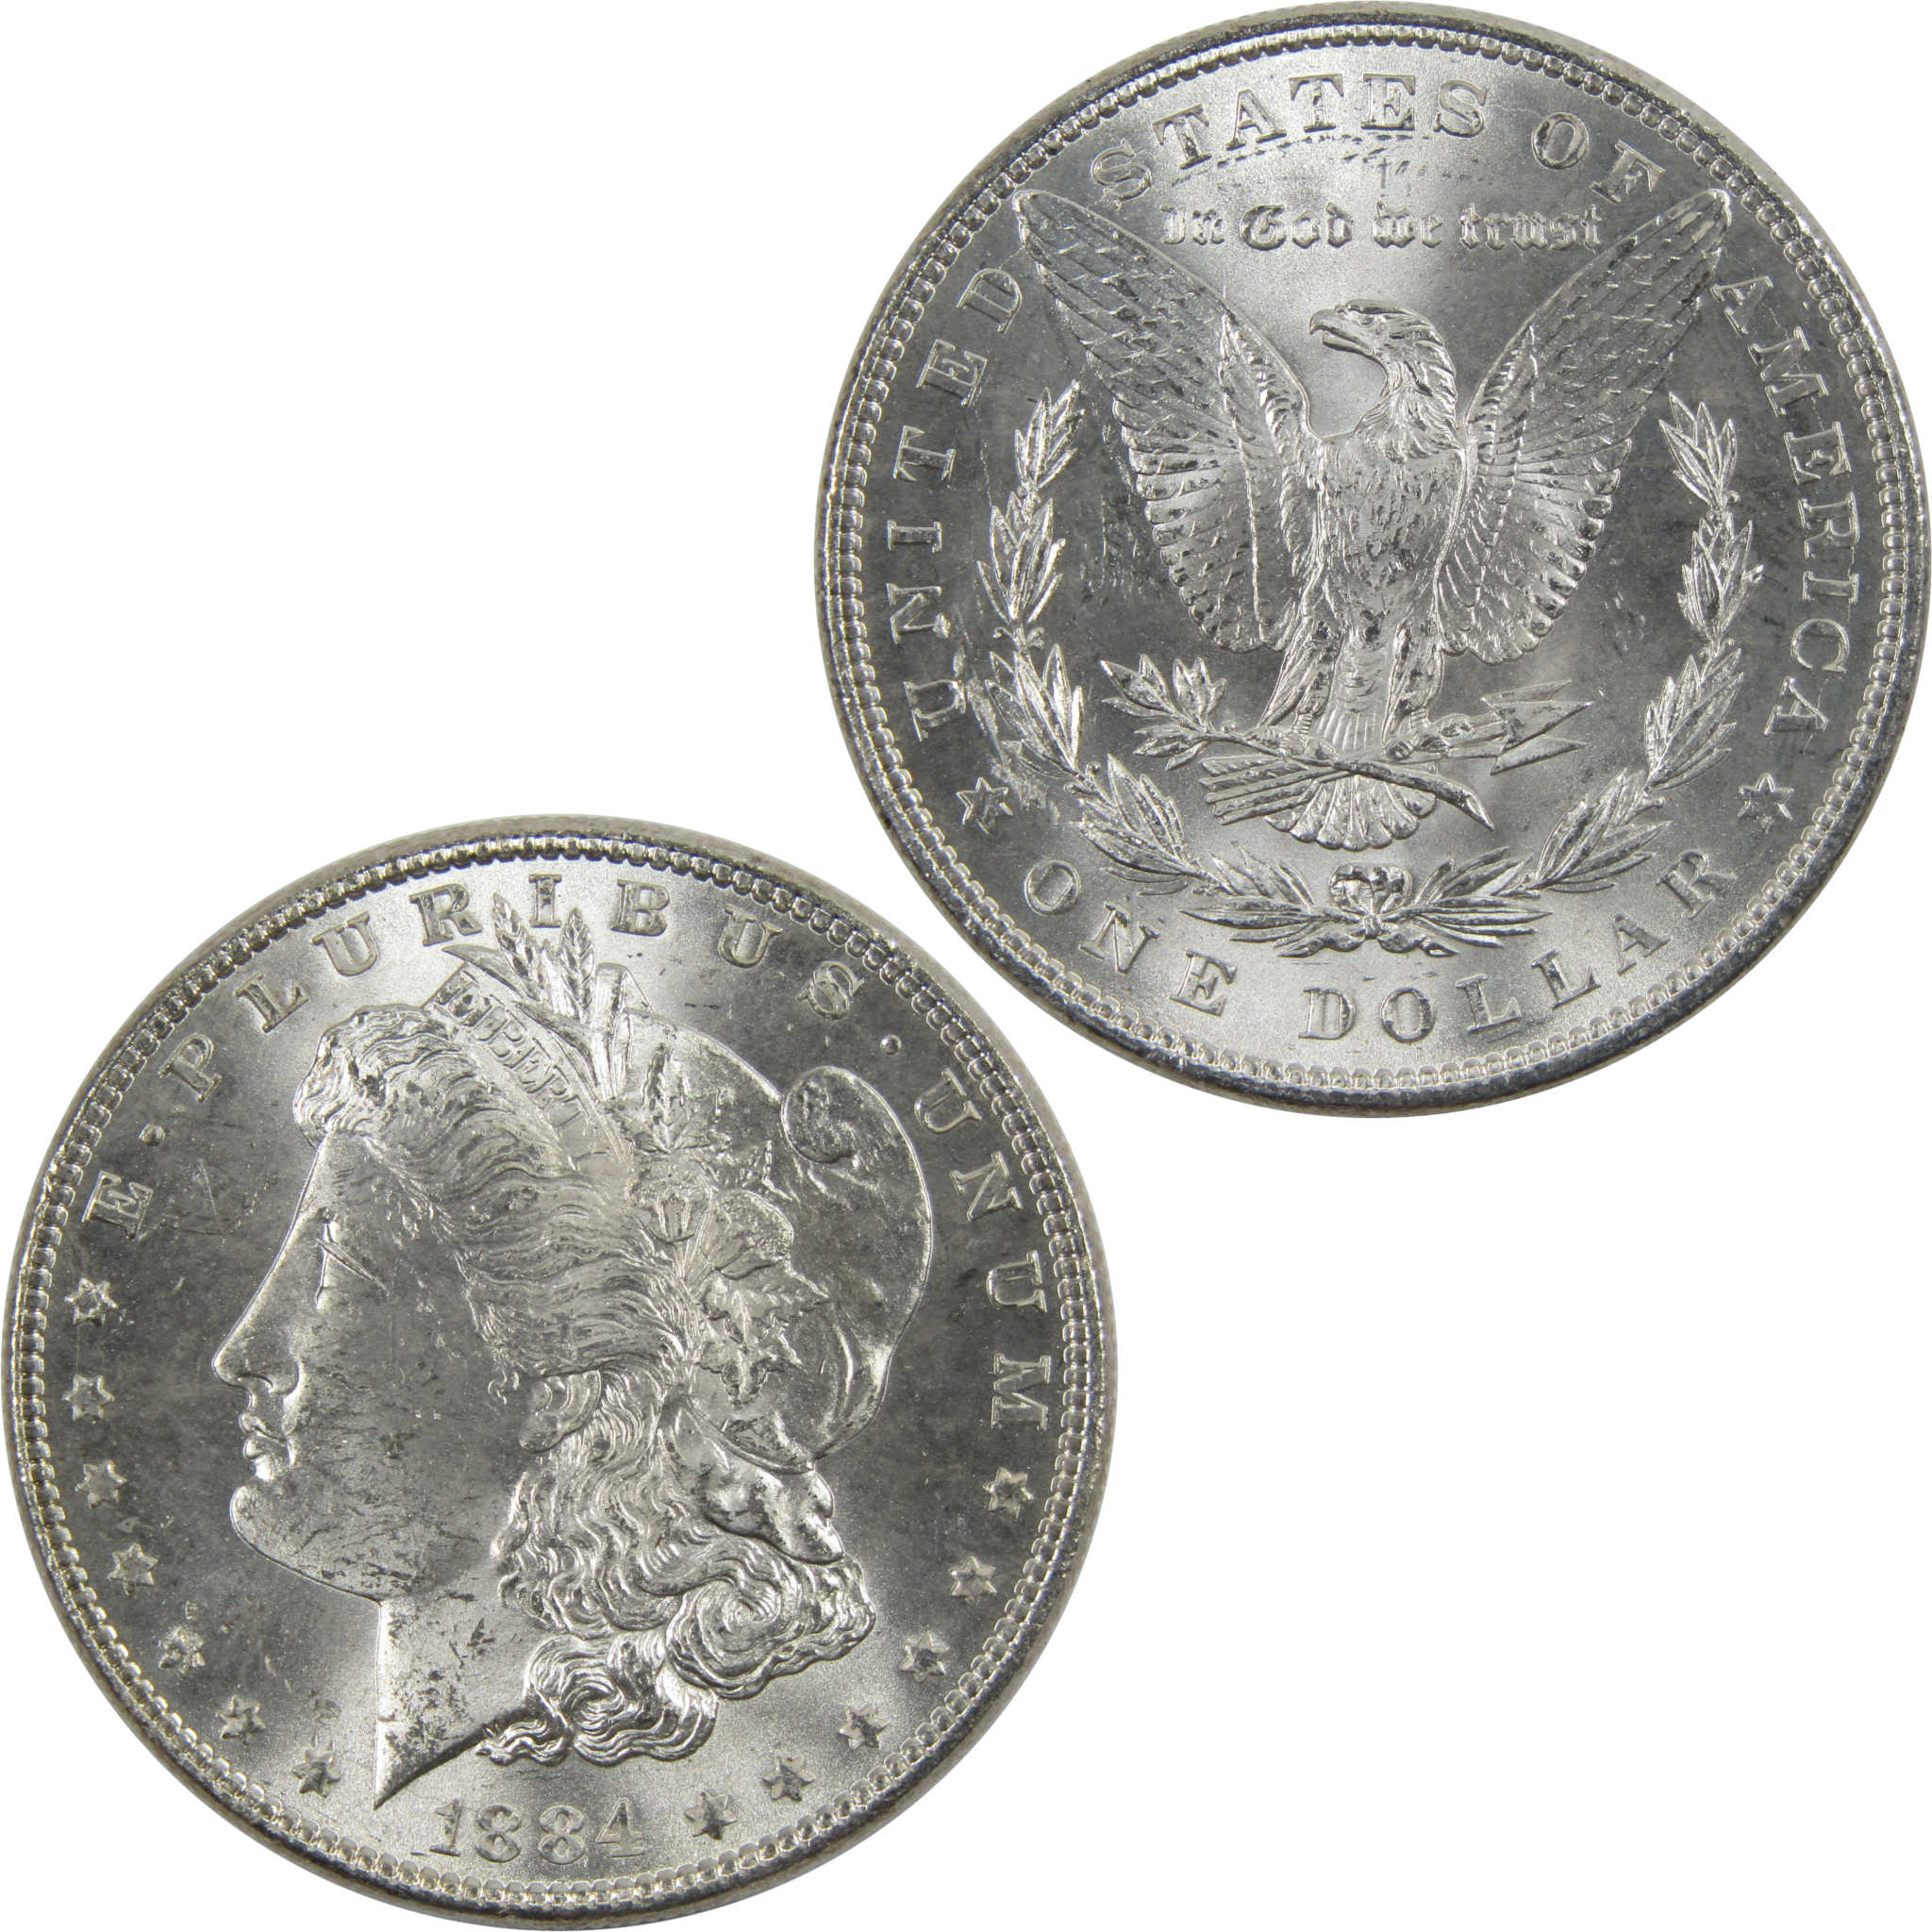 1884 Morgan Dollar BU Uncirculated 90% Silver $1 Coin SKU:I6010 - Morgan coin - Morgan silver dollar - Morgan silver dollar for sale - Profile Coins &amp; Collectibles